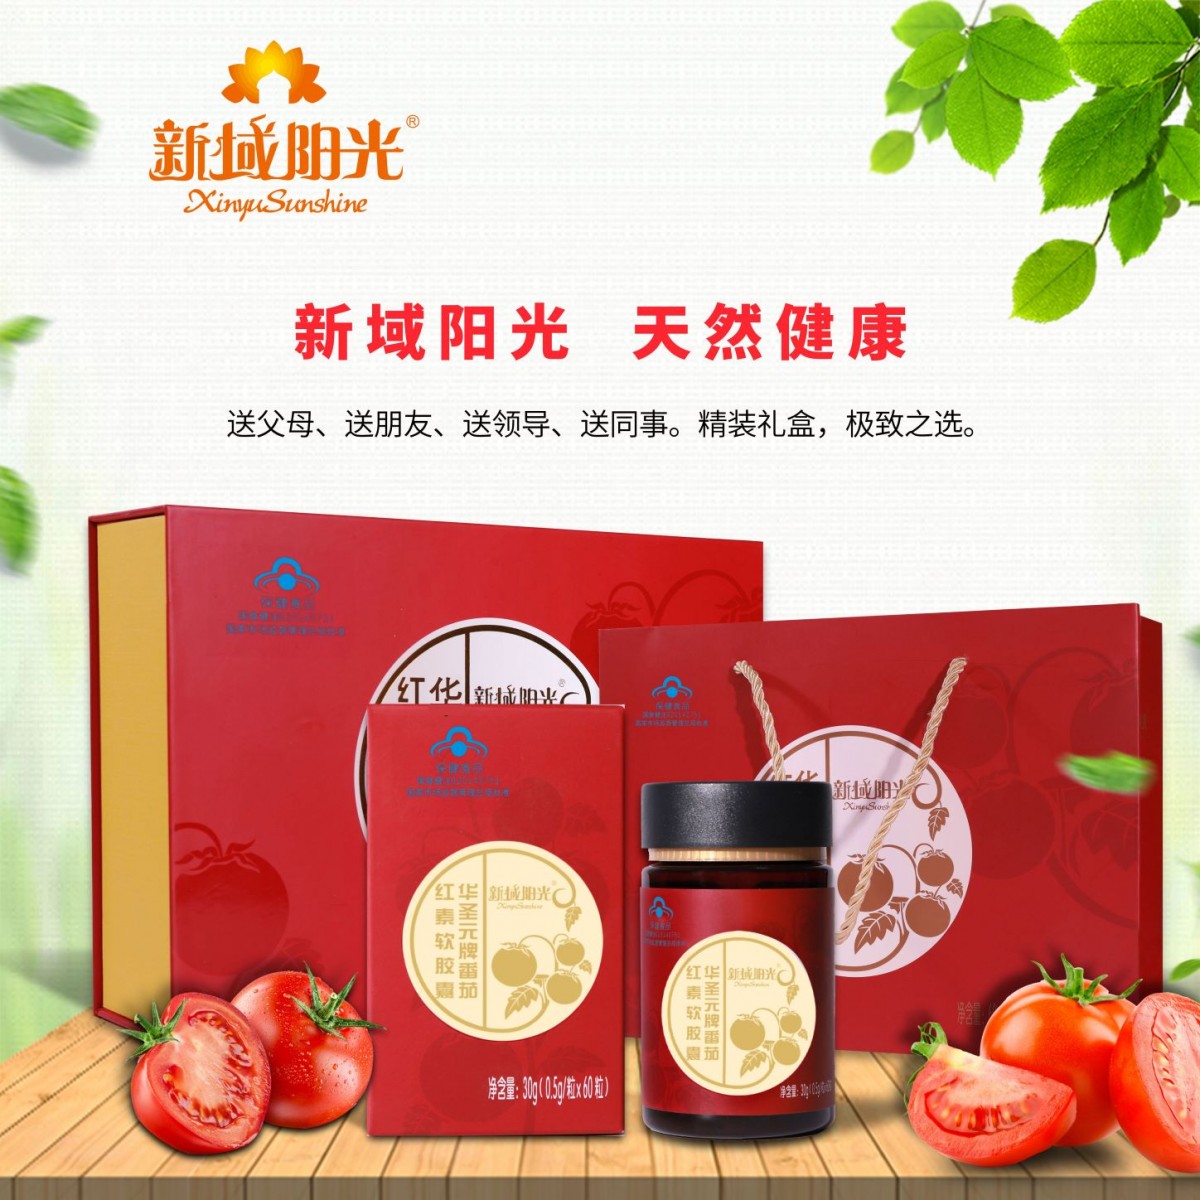 新域阳光番茄红素软胶囊0.5g/粒  60粒×2瓶 礼盒装